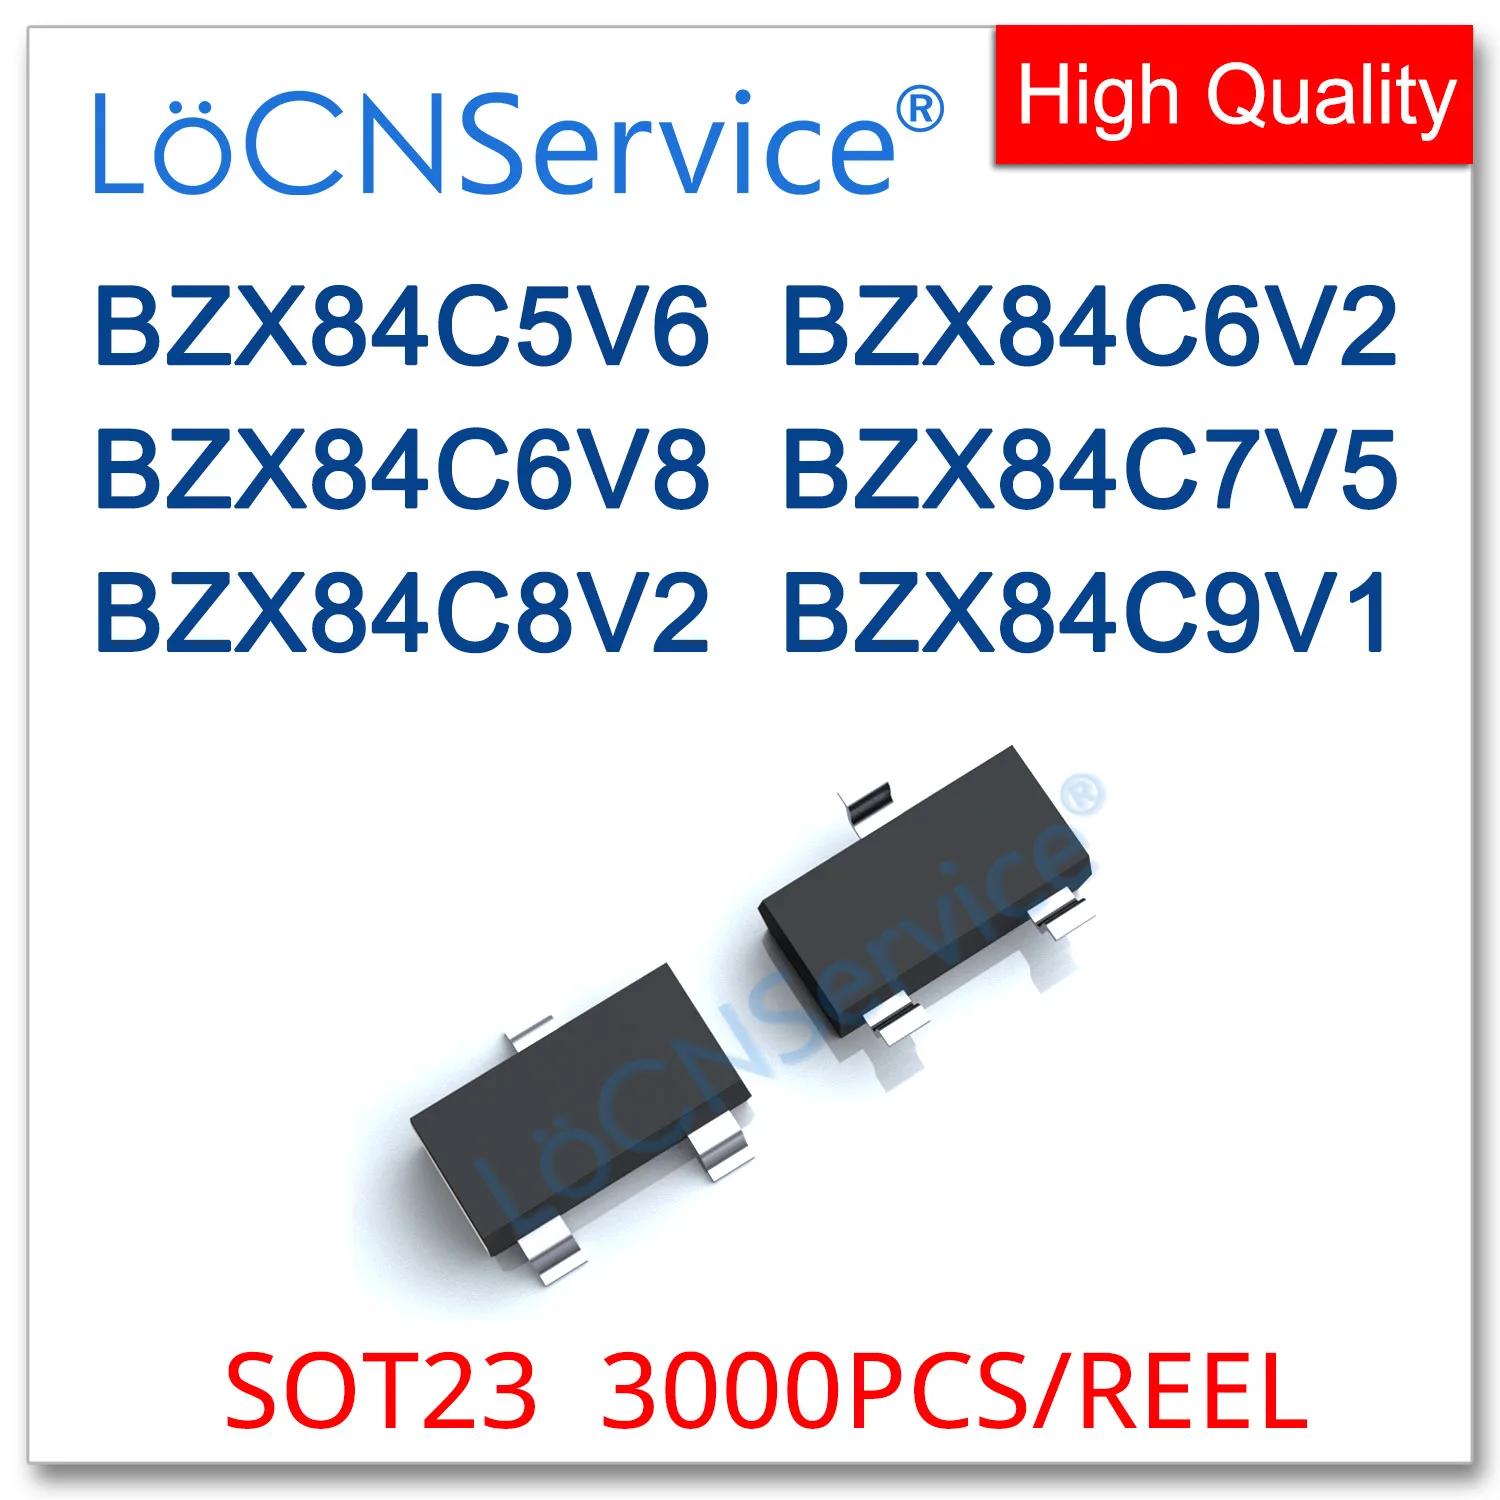 LoCNService 3000PCs SOT23 0.35W BZX84C5V6 5.6V BZX84C6V2 6.2V BZX84C6V8 6.8V BZX84C7V5 7.5V BZX84C8V2 8.2V BZX84C9V1